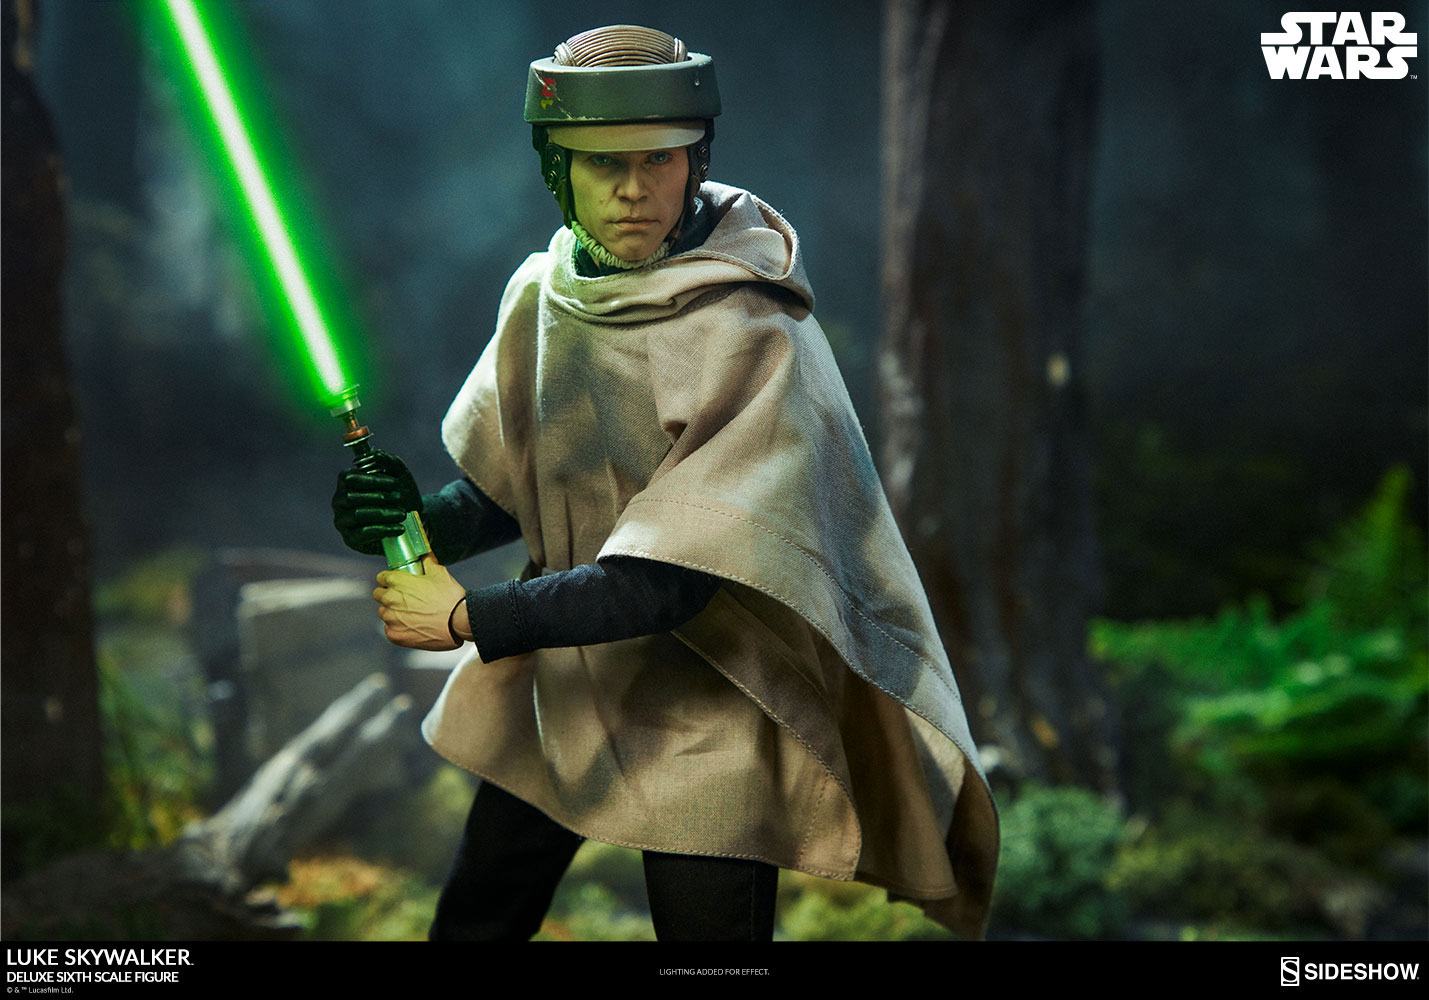 Star Wars Episode VI Deluxe Action Figure 1/6 Luke Skywalker Deluxe 30 cm